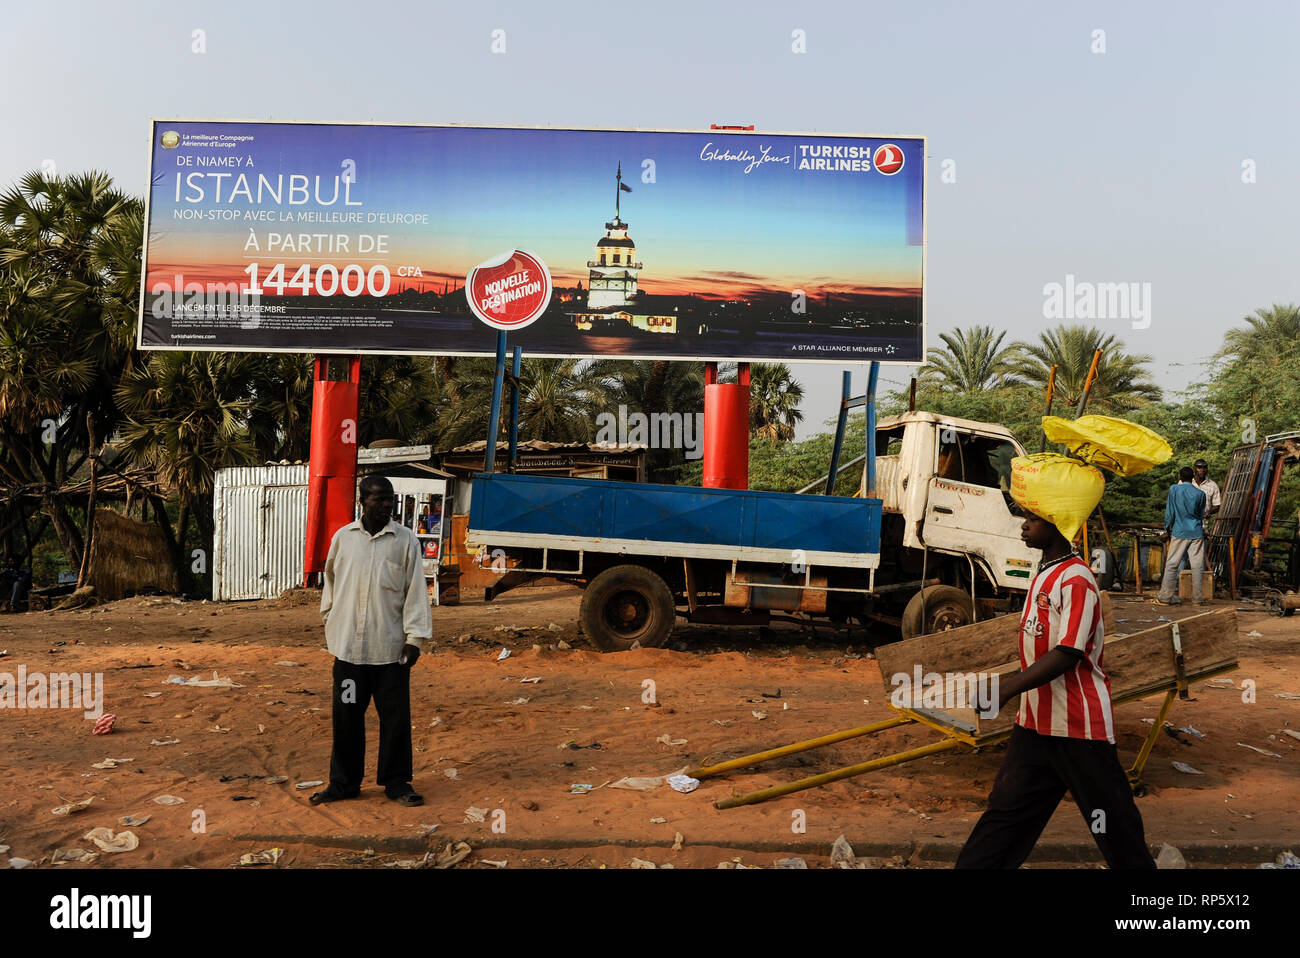 NIGER Niamey, türkischem Einfluss in Afrika, Reklametafeln für Turkish Airlines Stockfoto